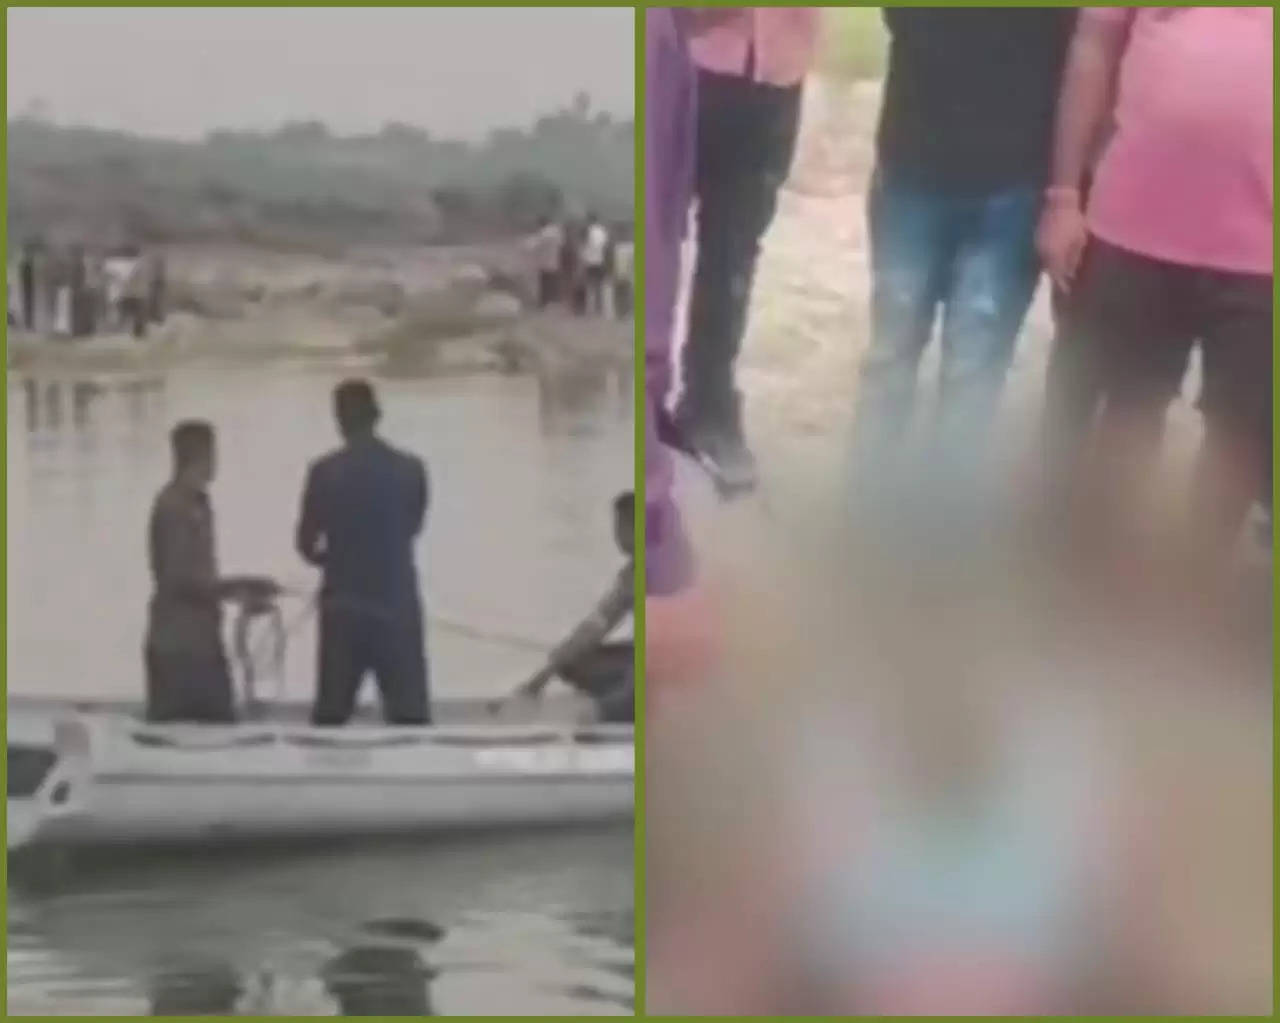 બનાવ@વડોદરા: મહીસાગર નદીમાં ન્હાવા ગયેલા 2 લોકોએ જીવ ગુમાવ્યો, પરિવારજનોમાં શોક